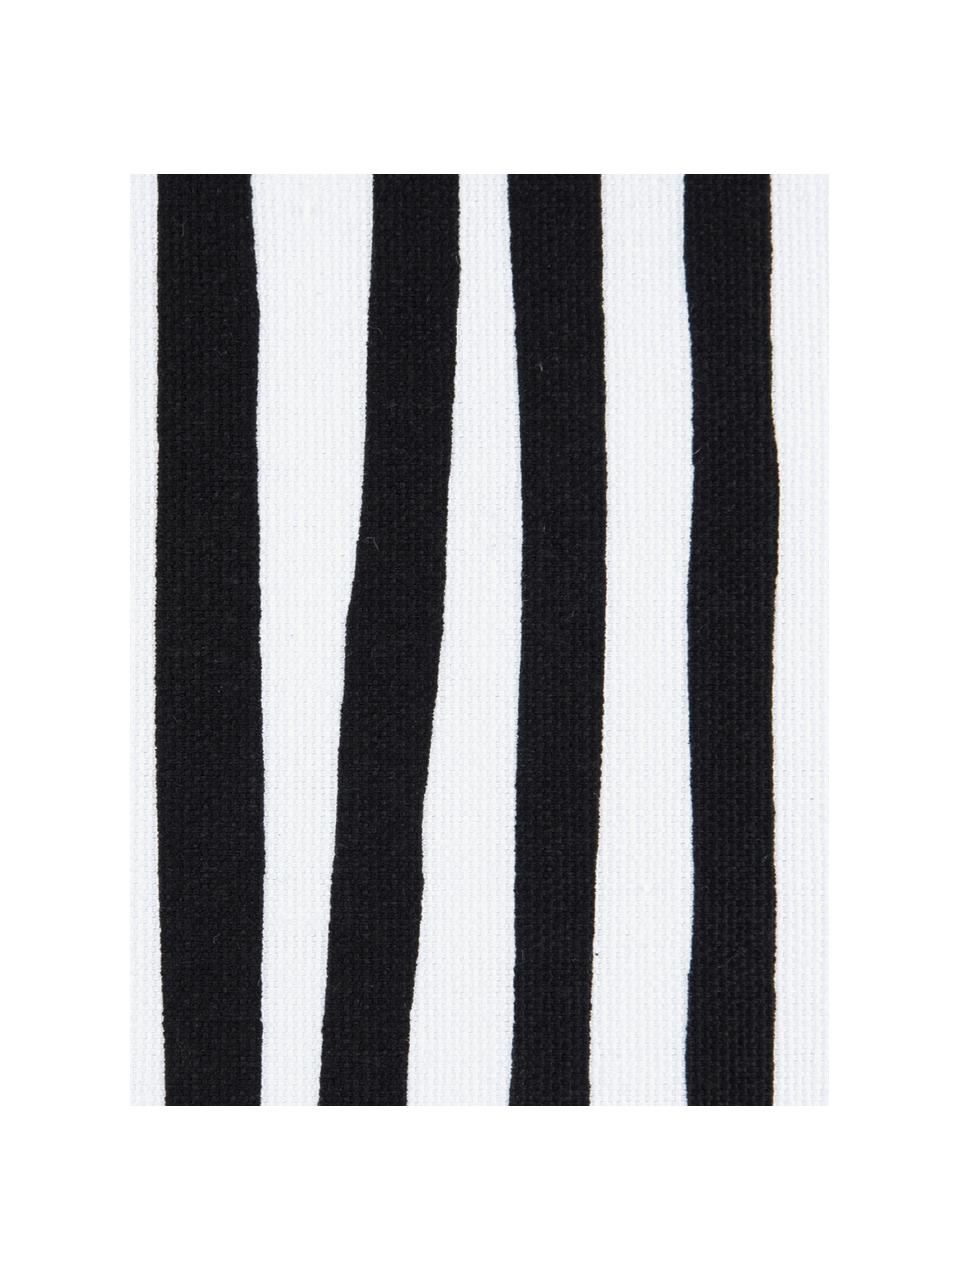 Kussenhoes Corey met strepen in zwart/wit, 100% katoen, Zwart, wit, B 40 x L 40 cm